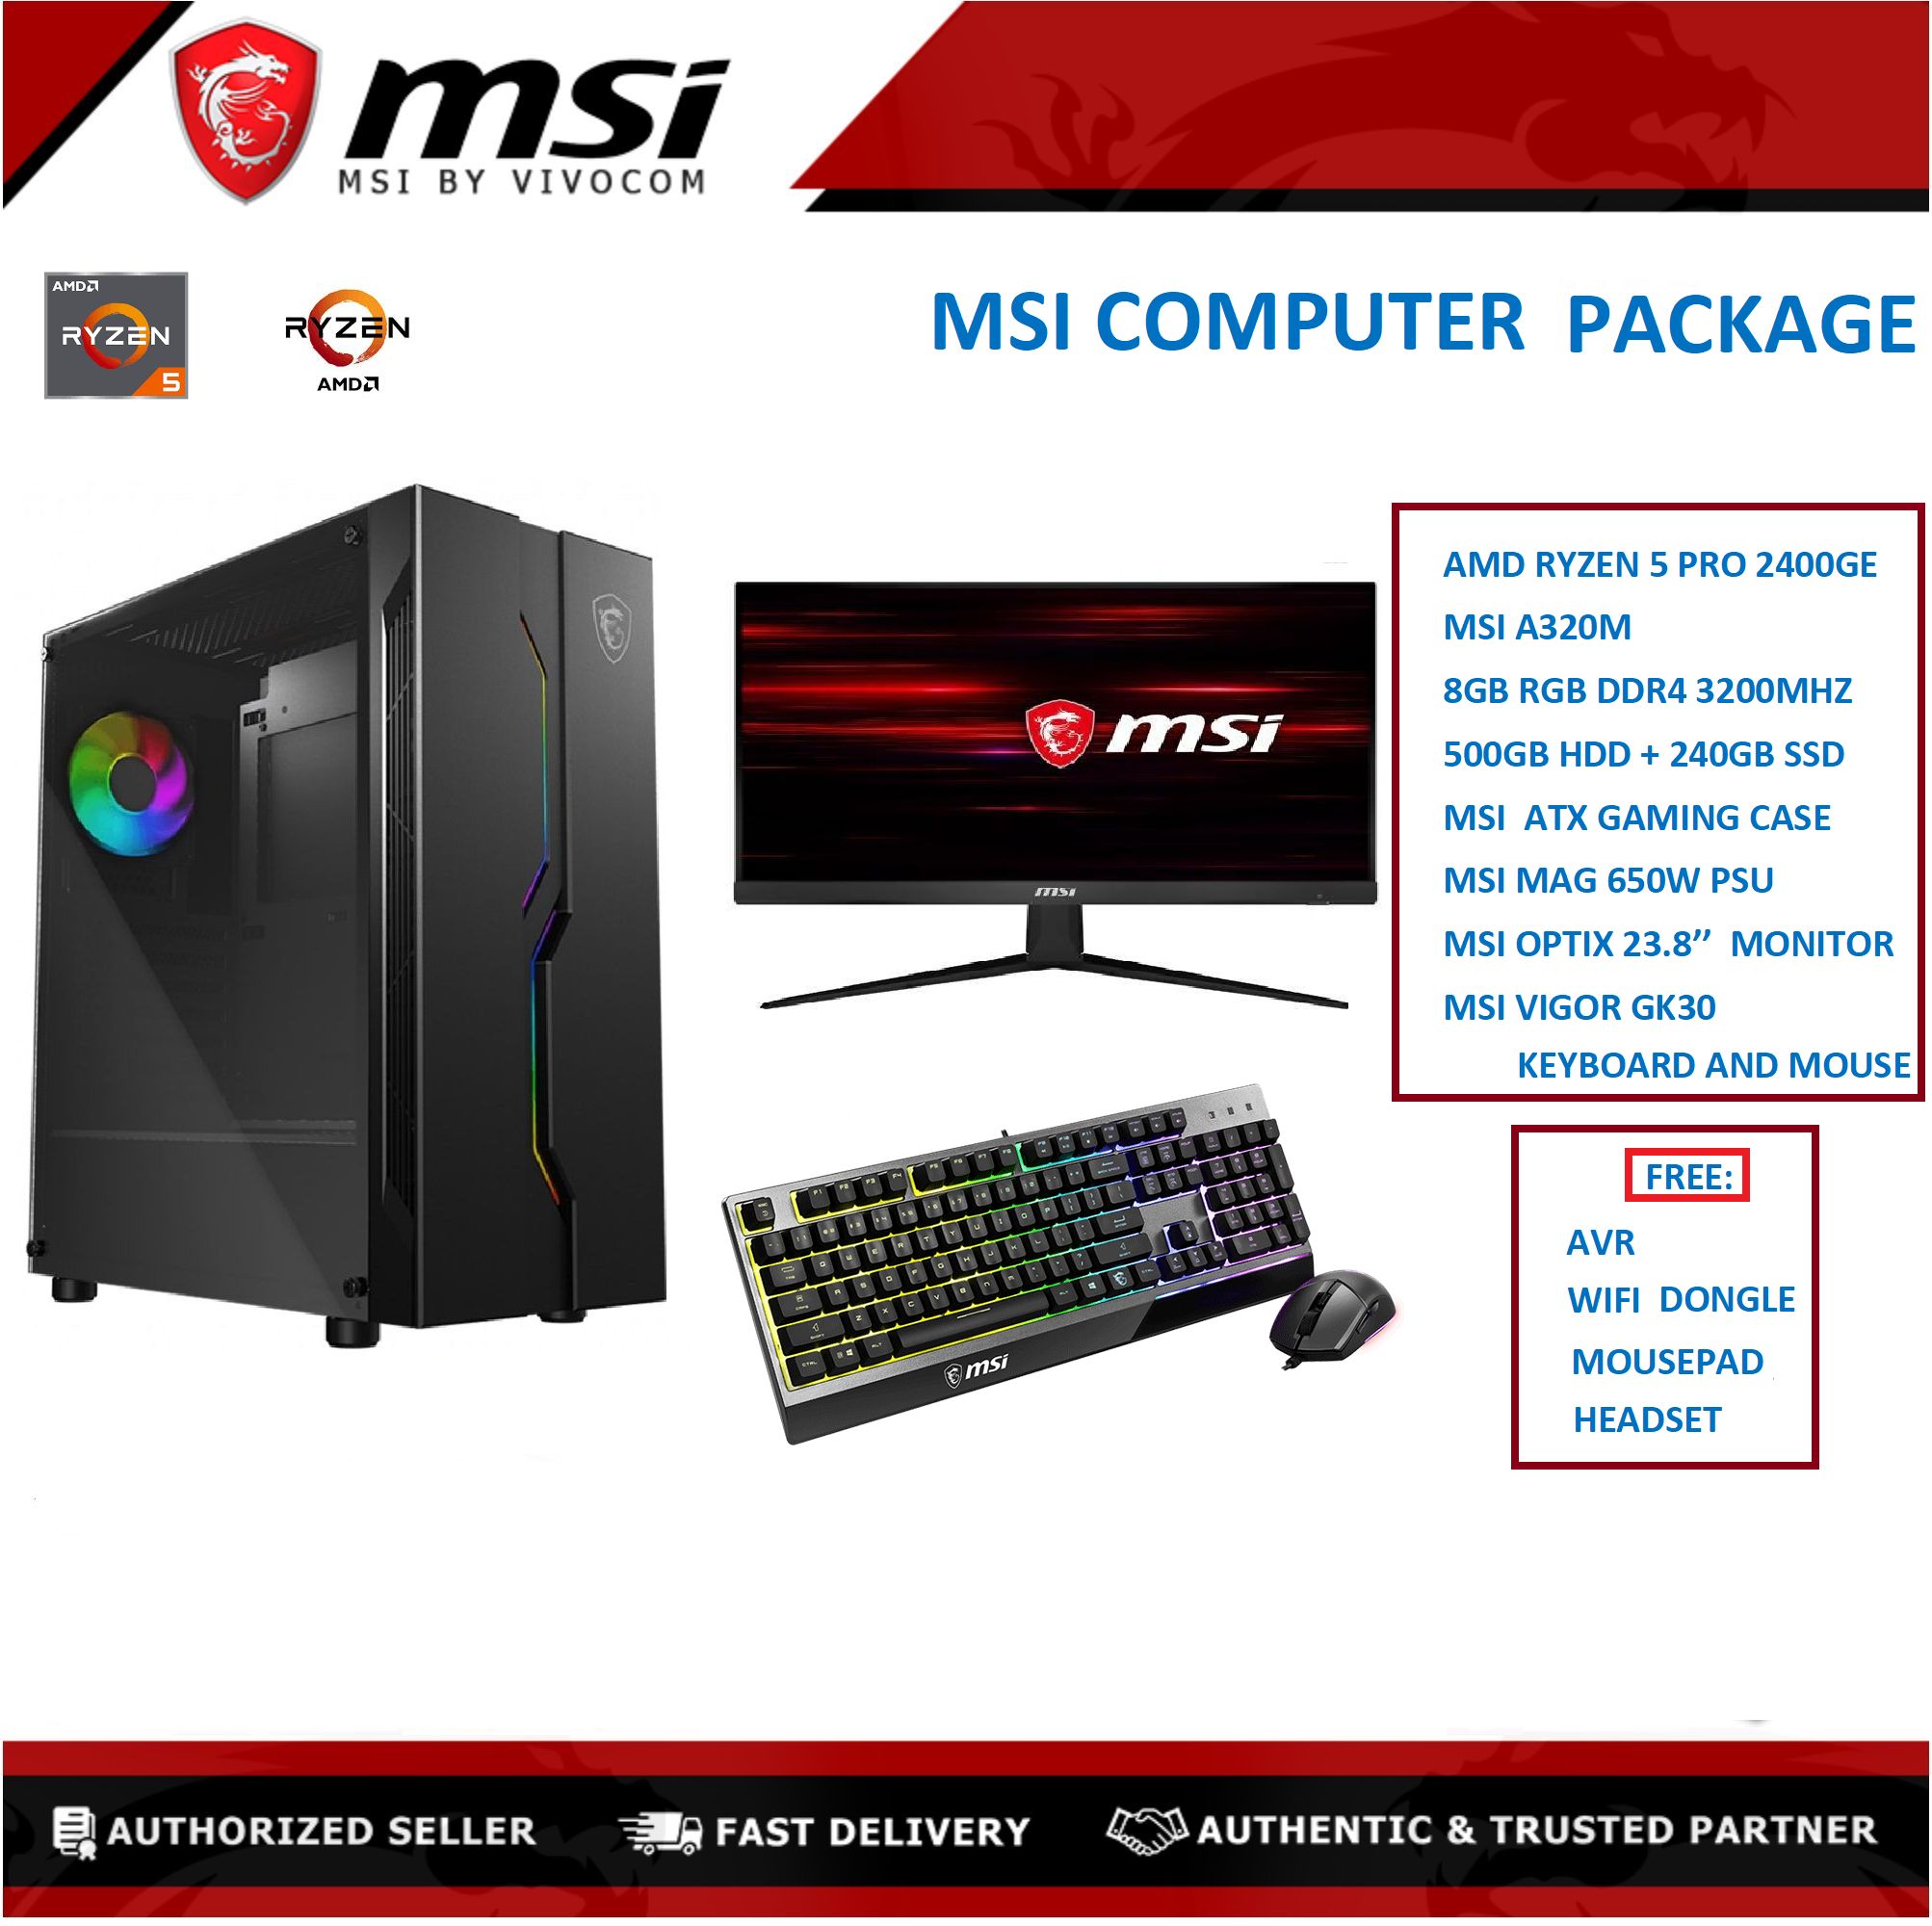 MSI COMPUTER DESKTOP PACKAGE / AMD RYZEN 5 PRO